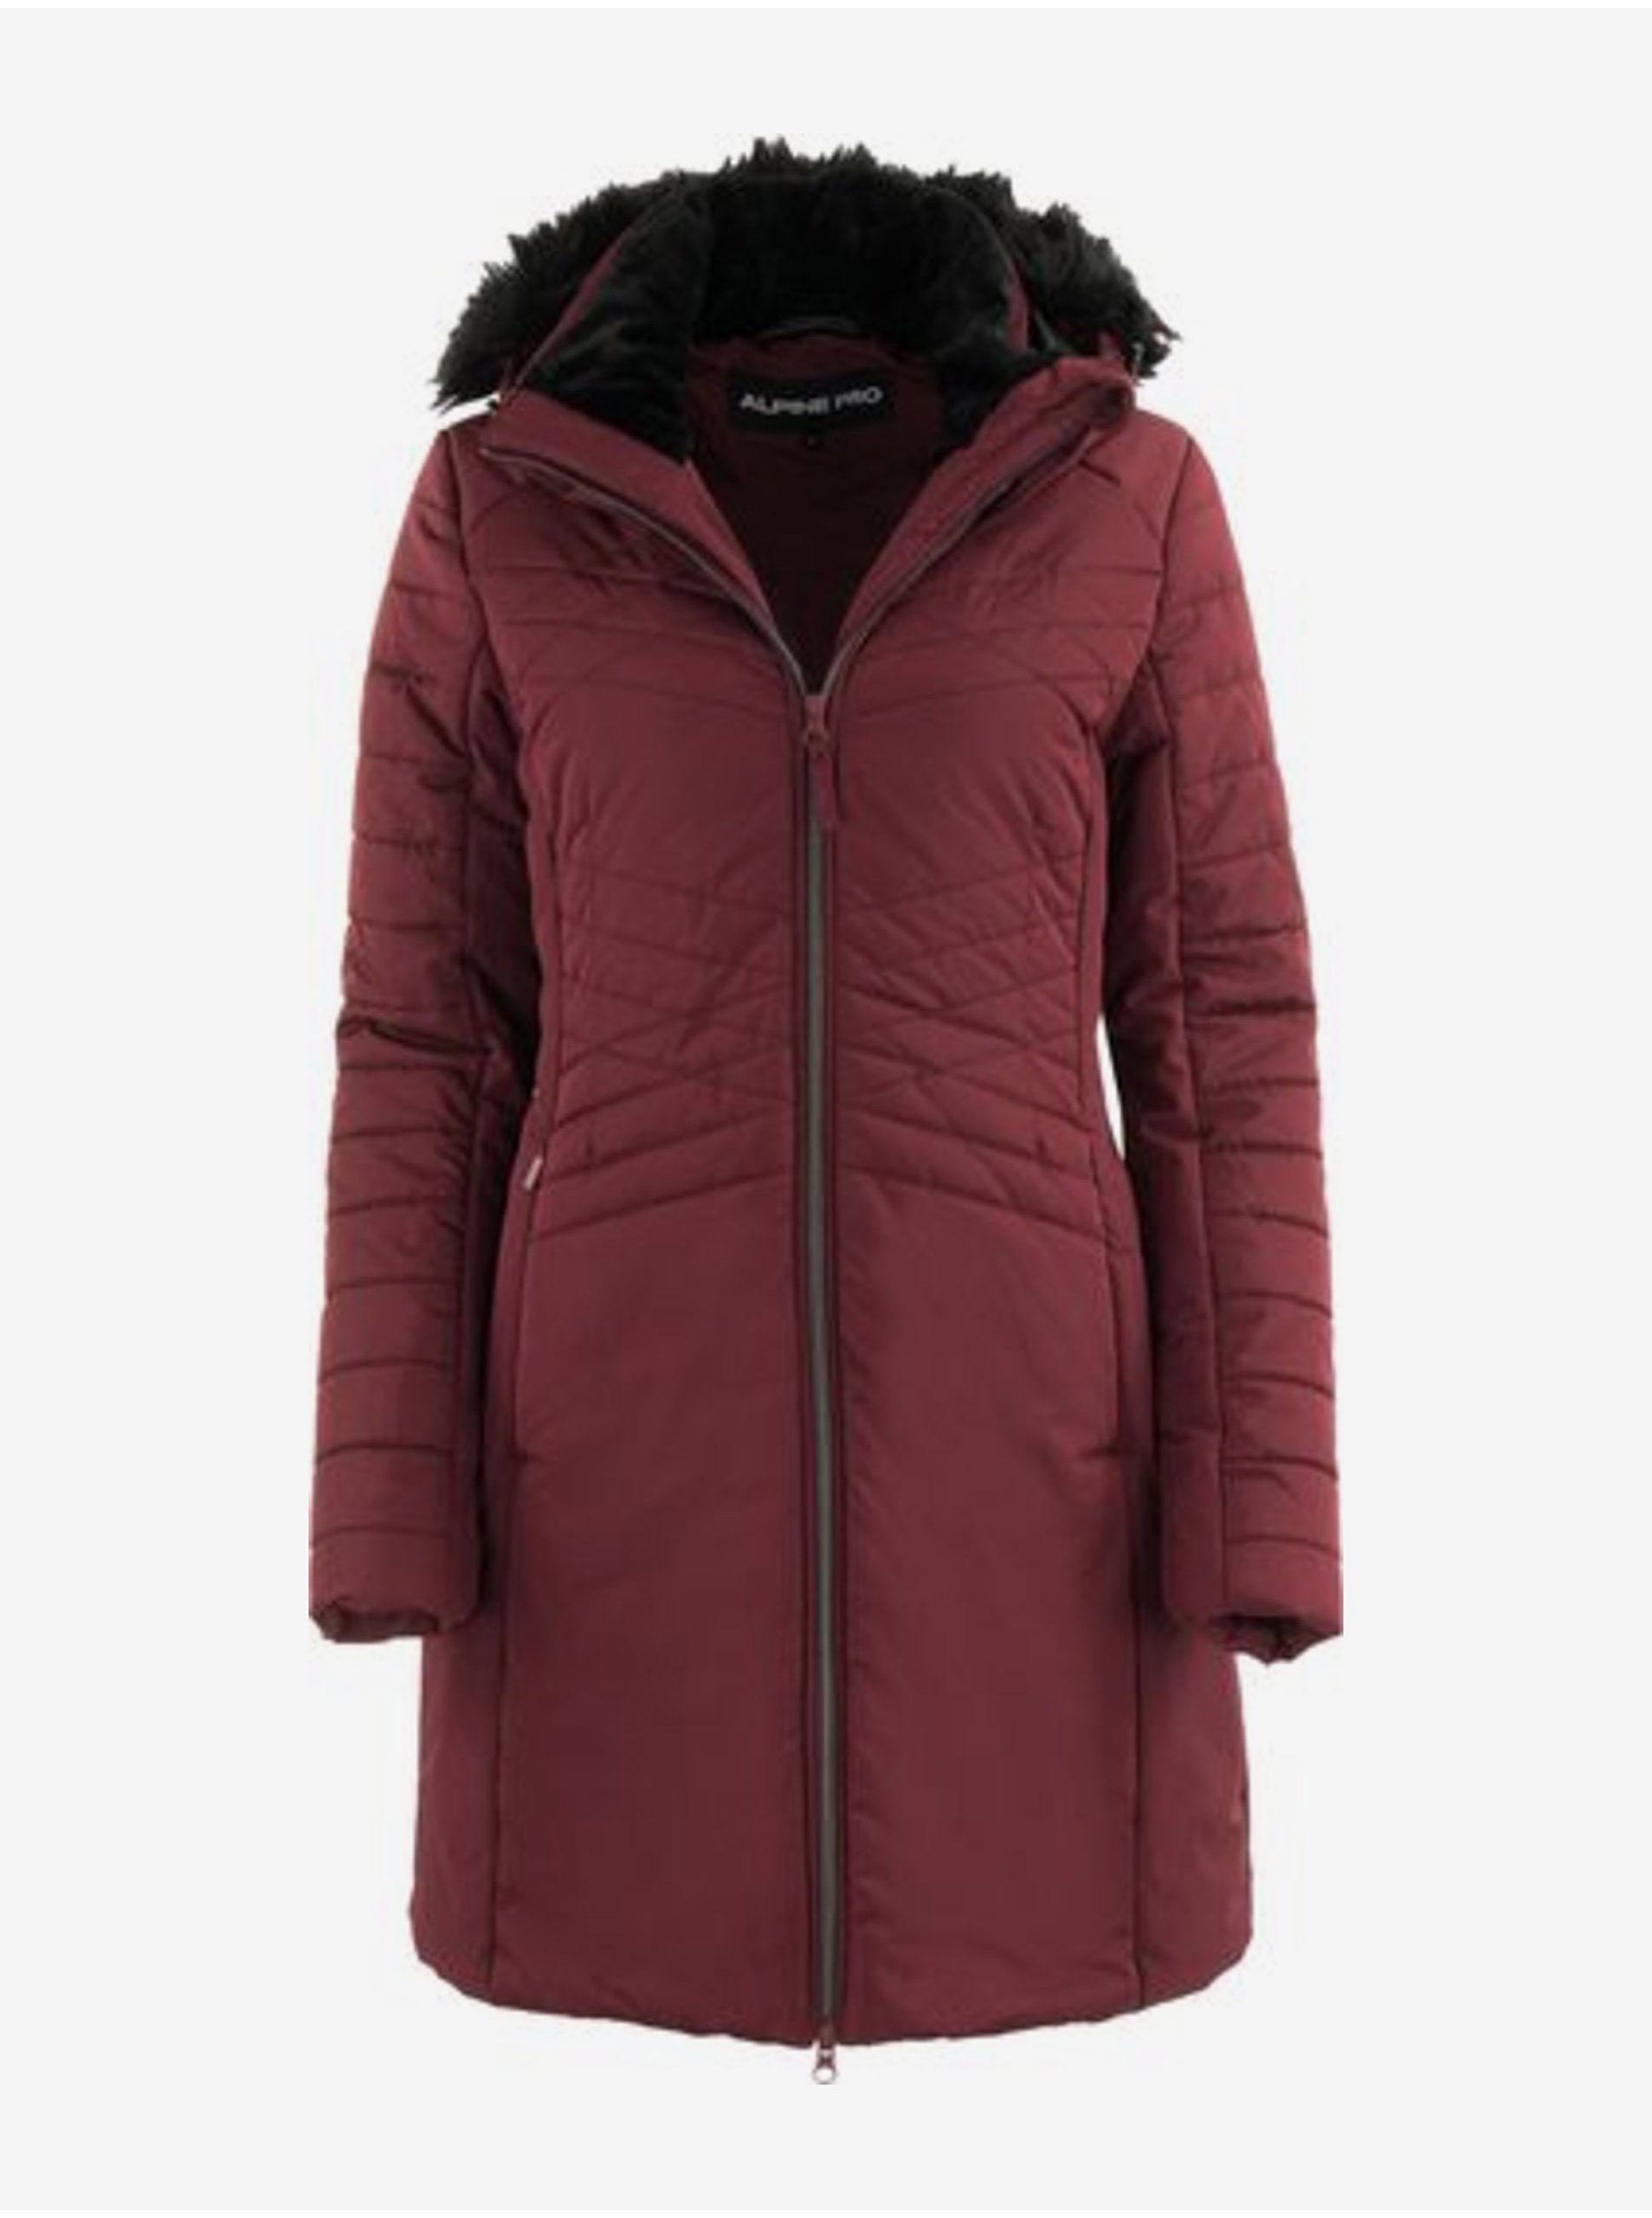 E-shop Vínový dámský prošívaný kabát ALPINE PRO CERHA